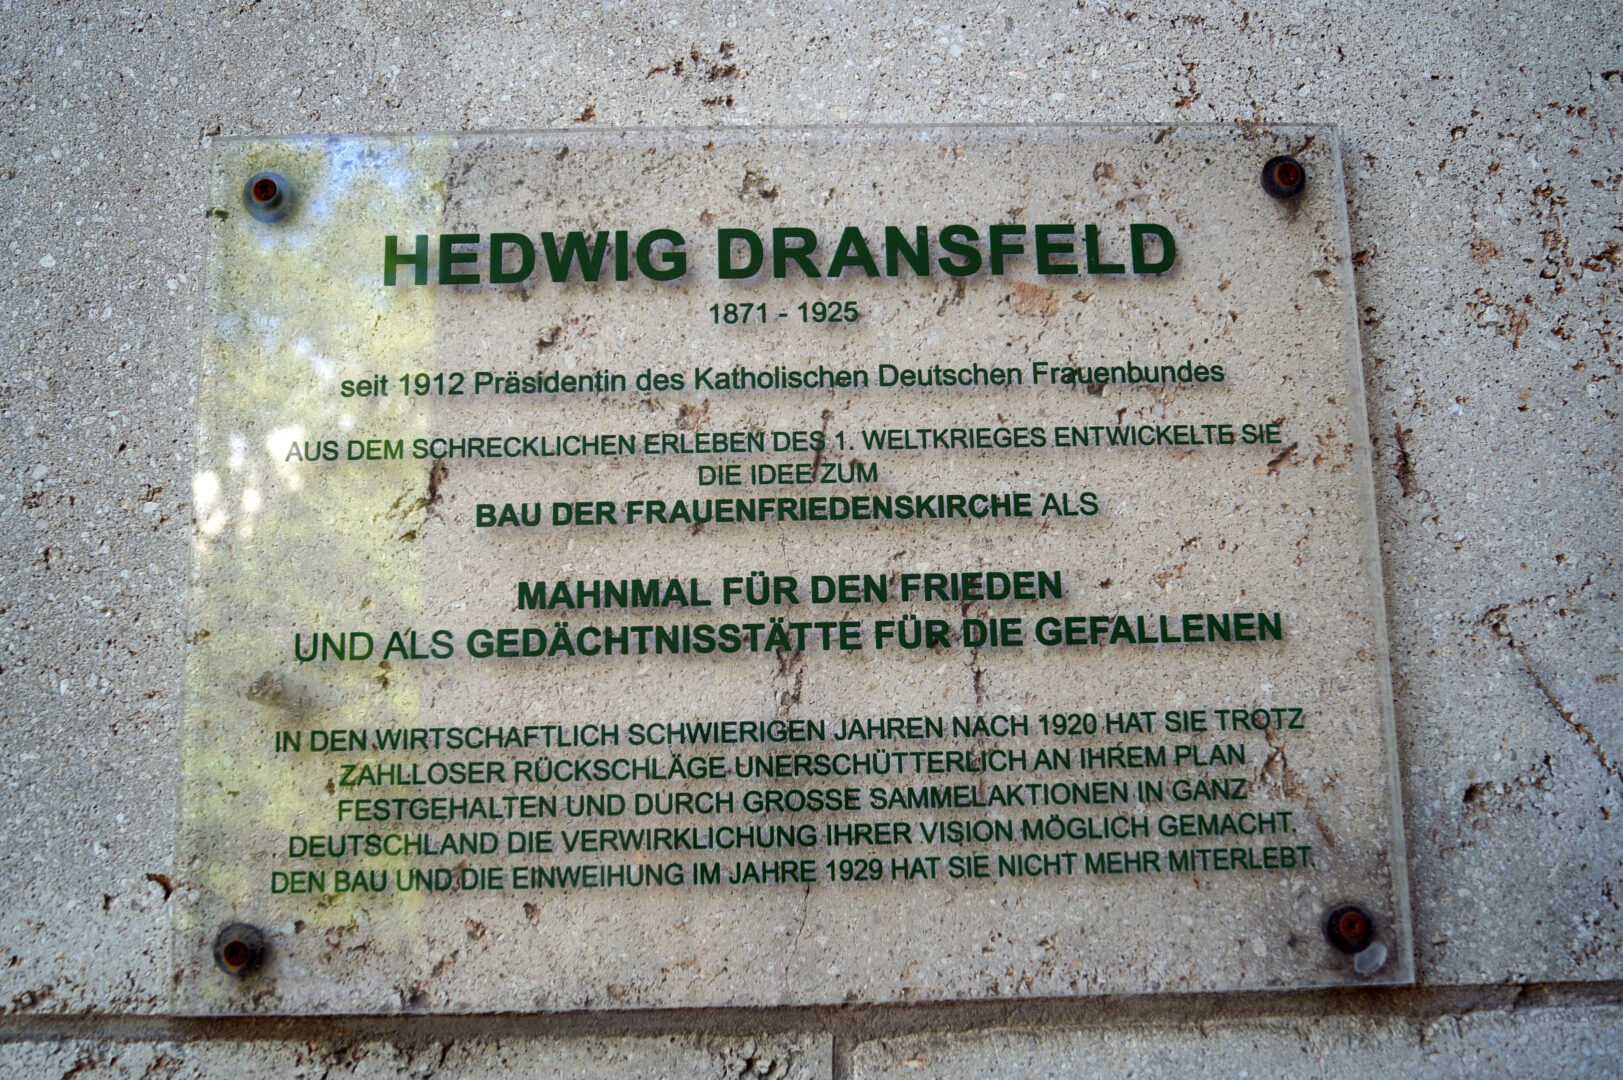 Gedenktafel Hedwig Dransfeld an der Frauenfriedenskirche